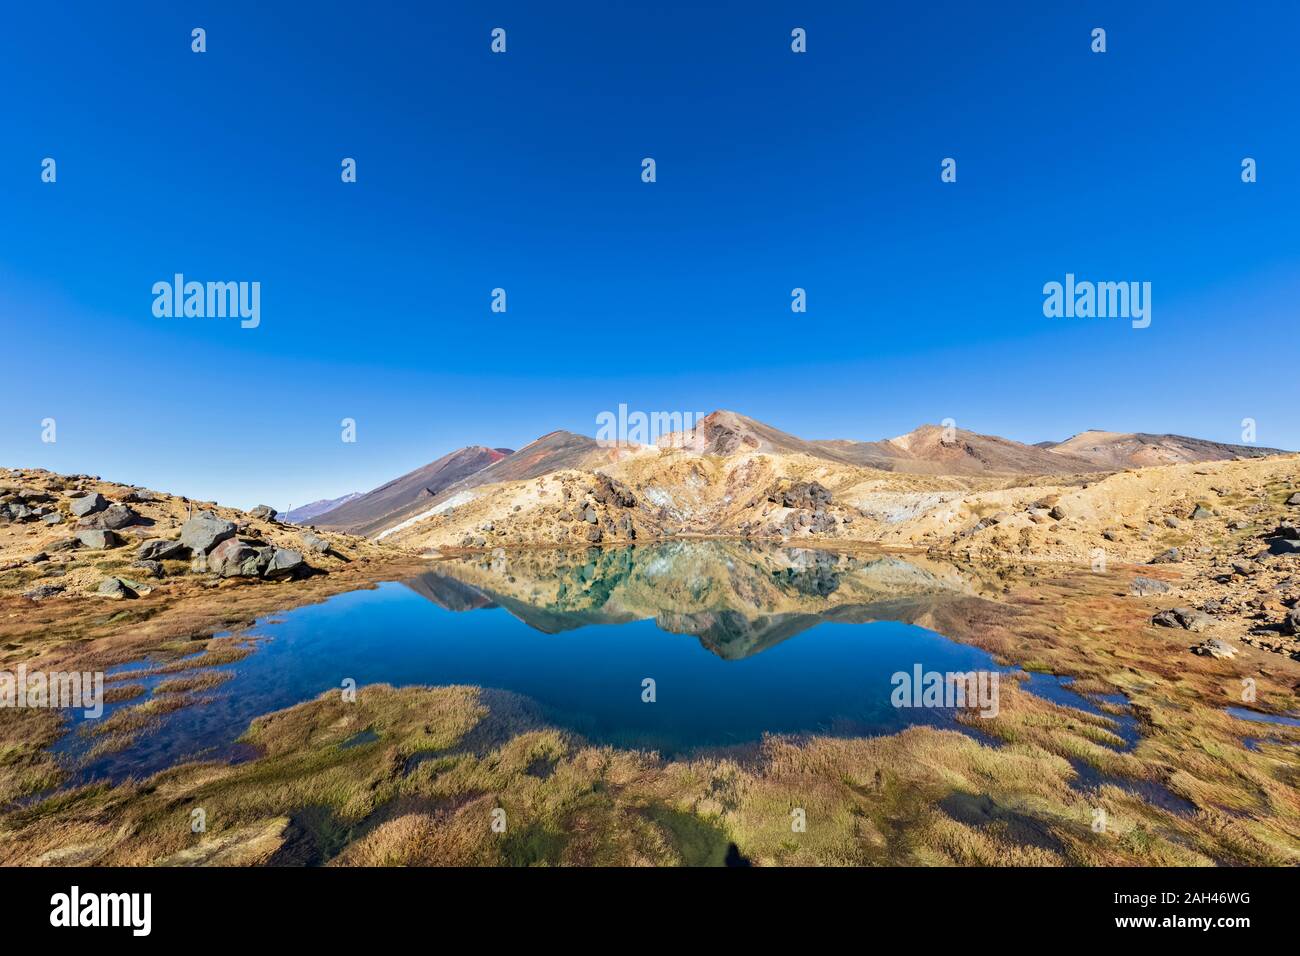 Nuova Zelanda, Isola del nord, azzurro cielo sopra il lago lucido nell Isola del nord altopiano vulcanico Foto Stock